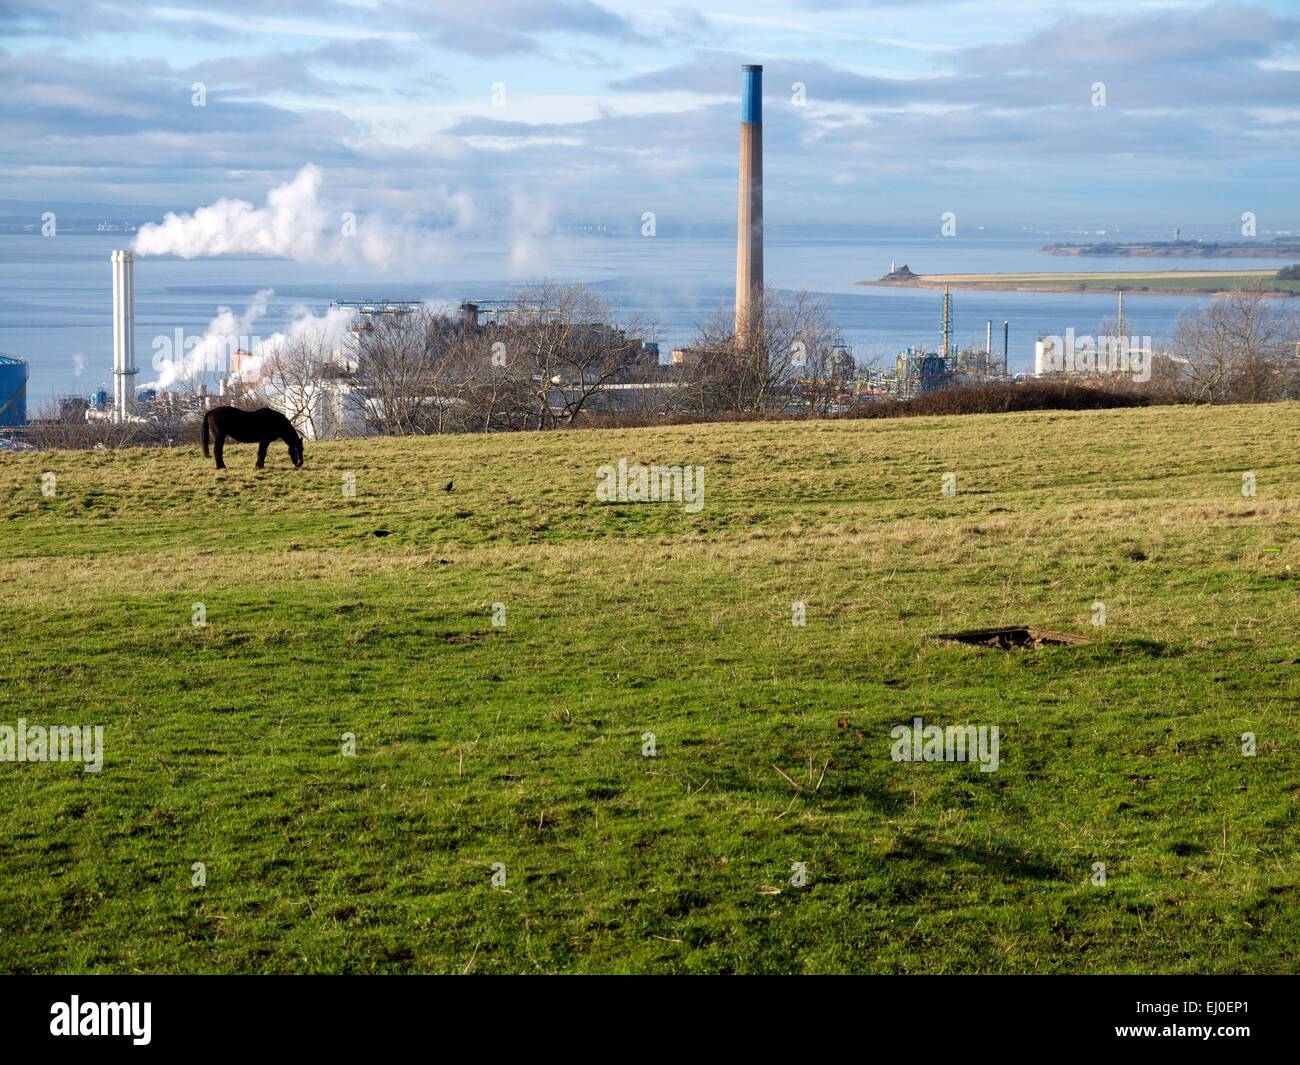 Pferde grasen auf ein Feld vor einer chemischen Fabrik mit einem Fluss im Hintergrund. Stockfoto